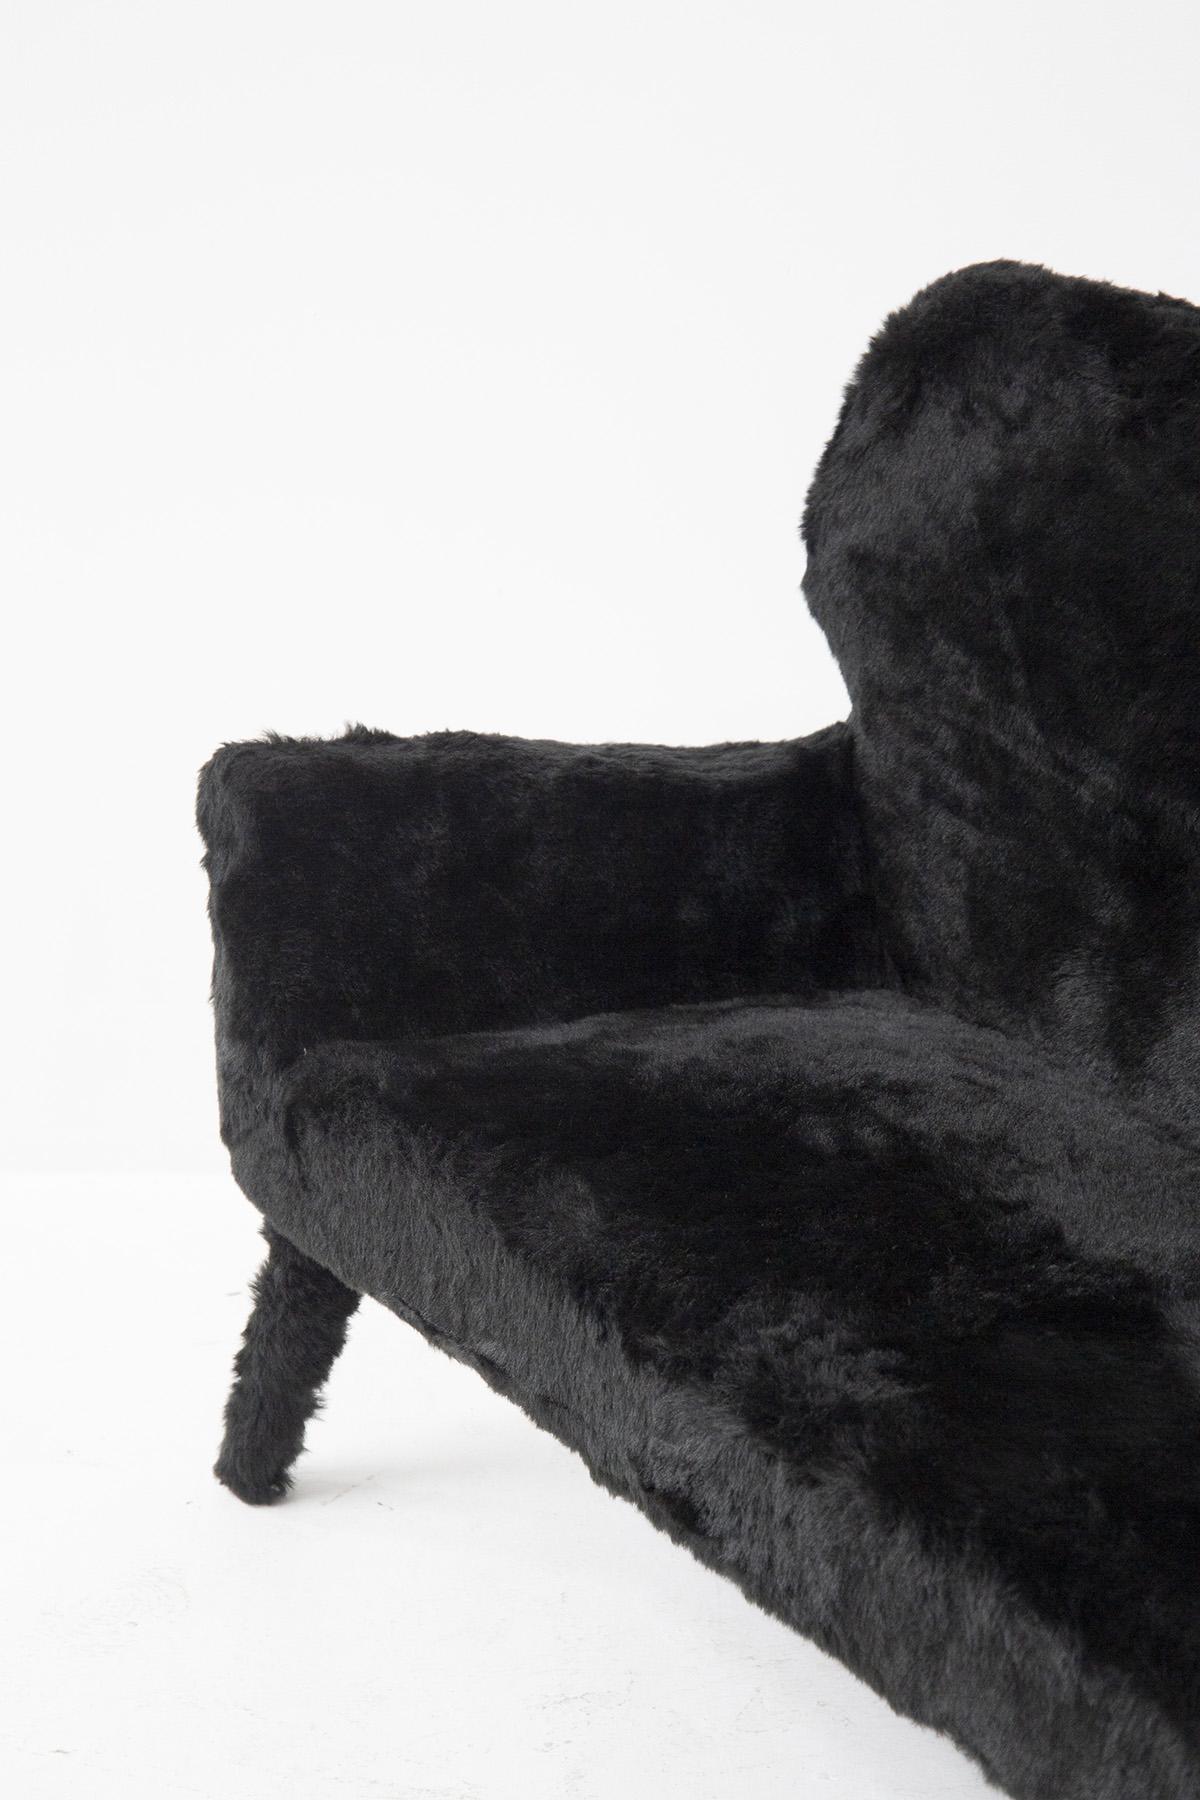 Wunderschönes Vintage-Sofa aus den 1950er Jahren, italienische Herstellung.
Das Sofa ist komplett mit schwarzem Kunstfell bezogen, sehr skurril.
Die Formen sind sehr einfach und geschwungen. Es gibt 4 Füße für die Unterstützung auch in Fell